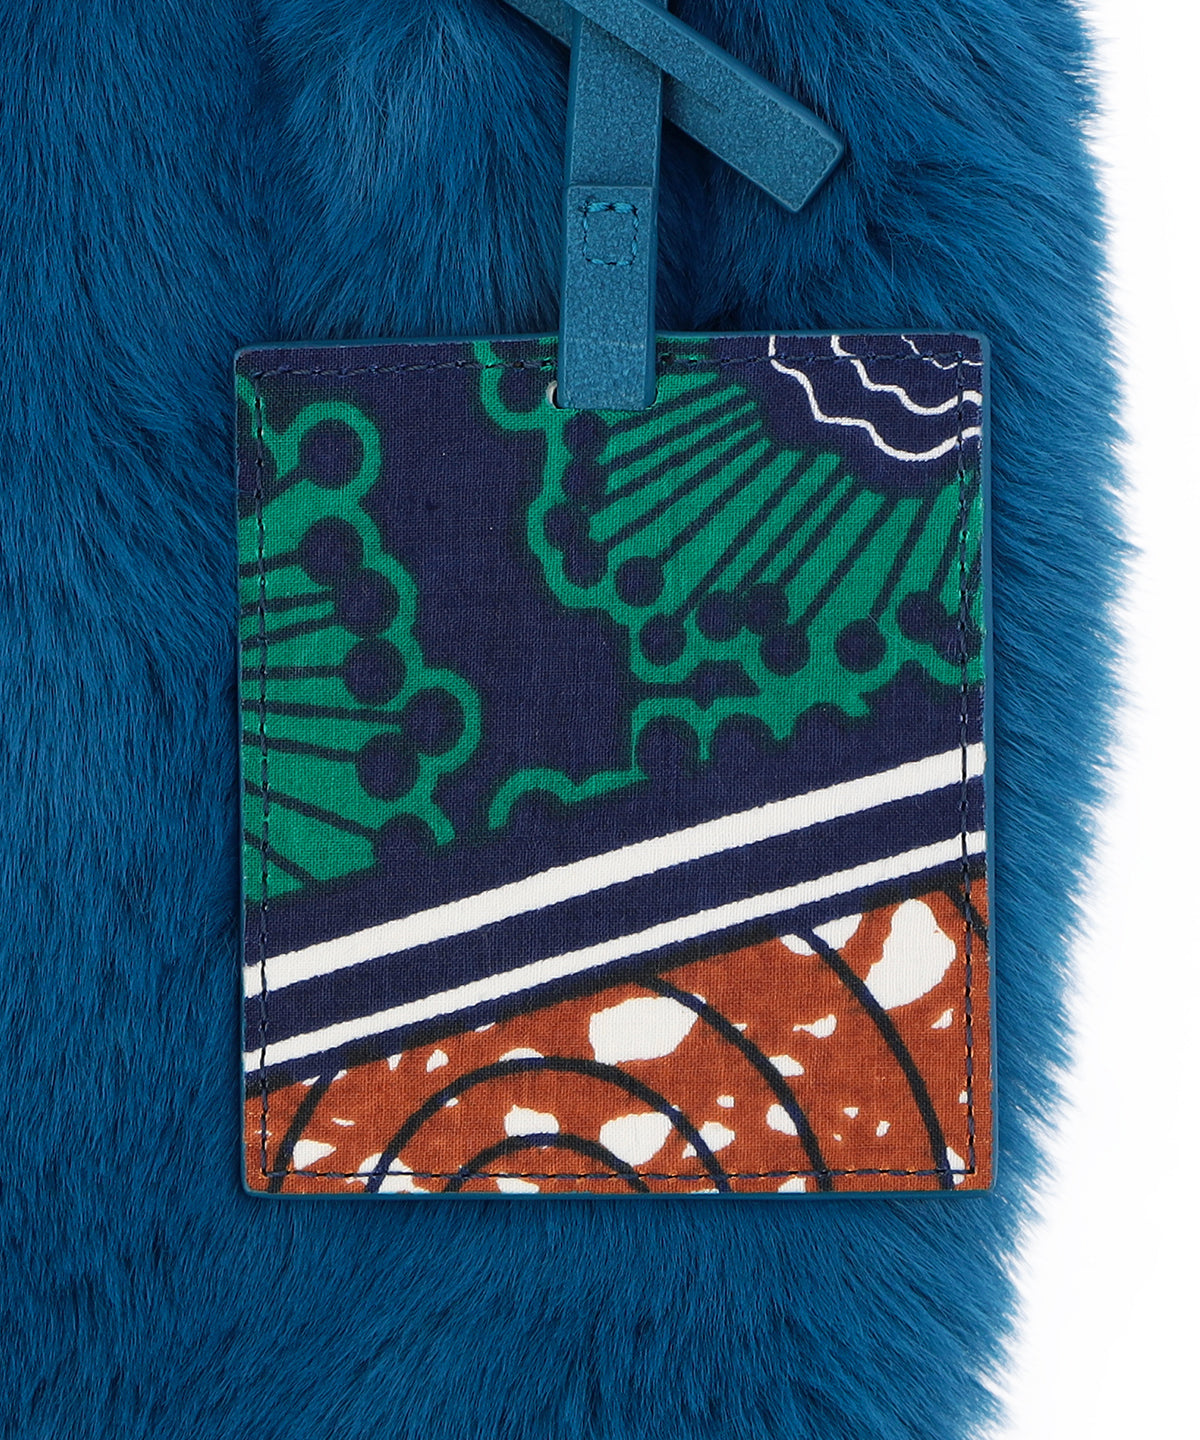 Eco Fur Convenience Bag (Small) E.BLUE